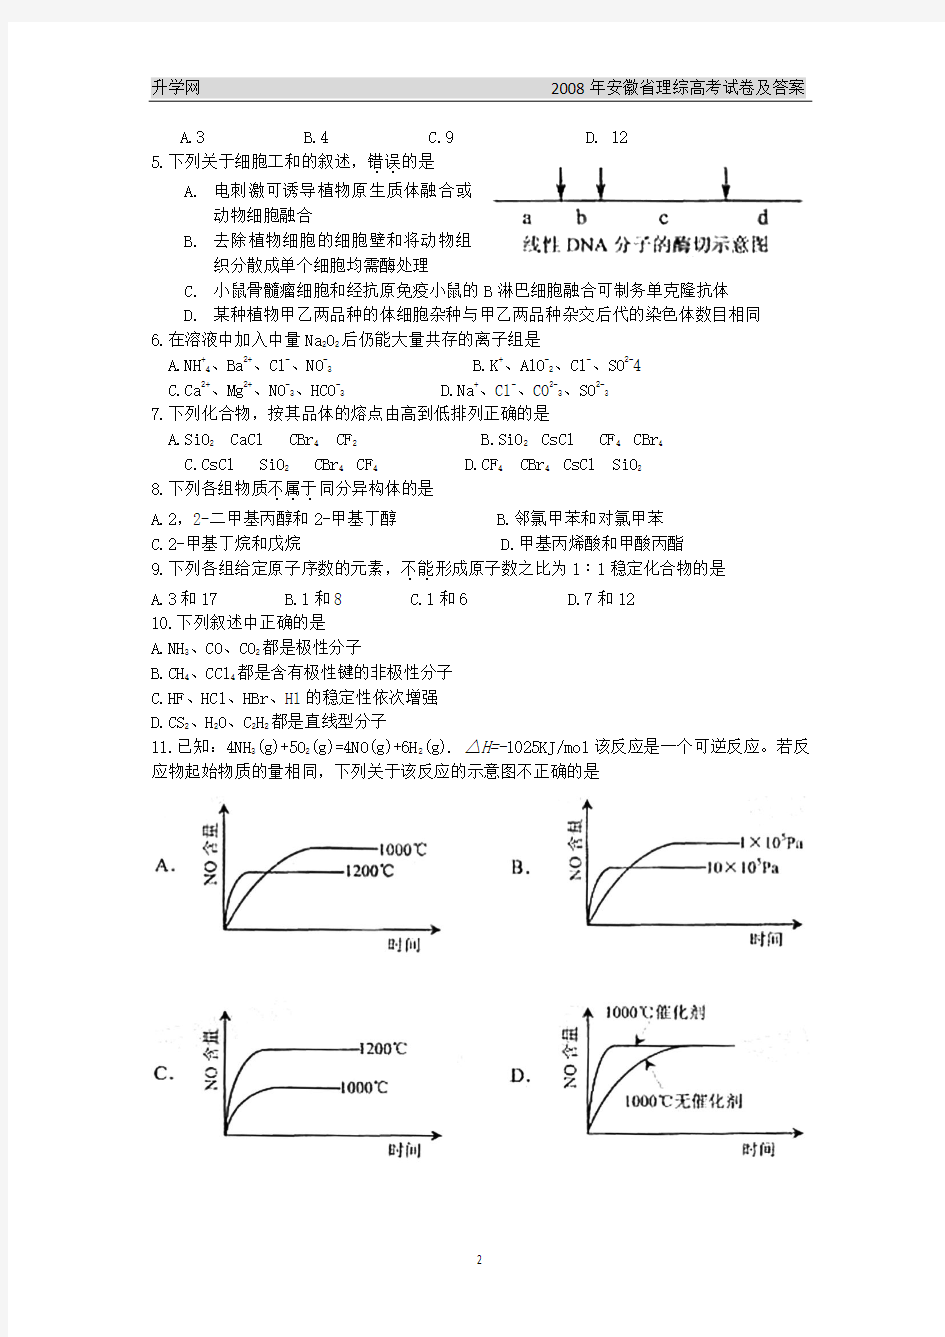 2008年安徽省(理综)高考试卷及答案